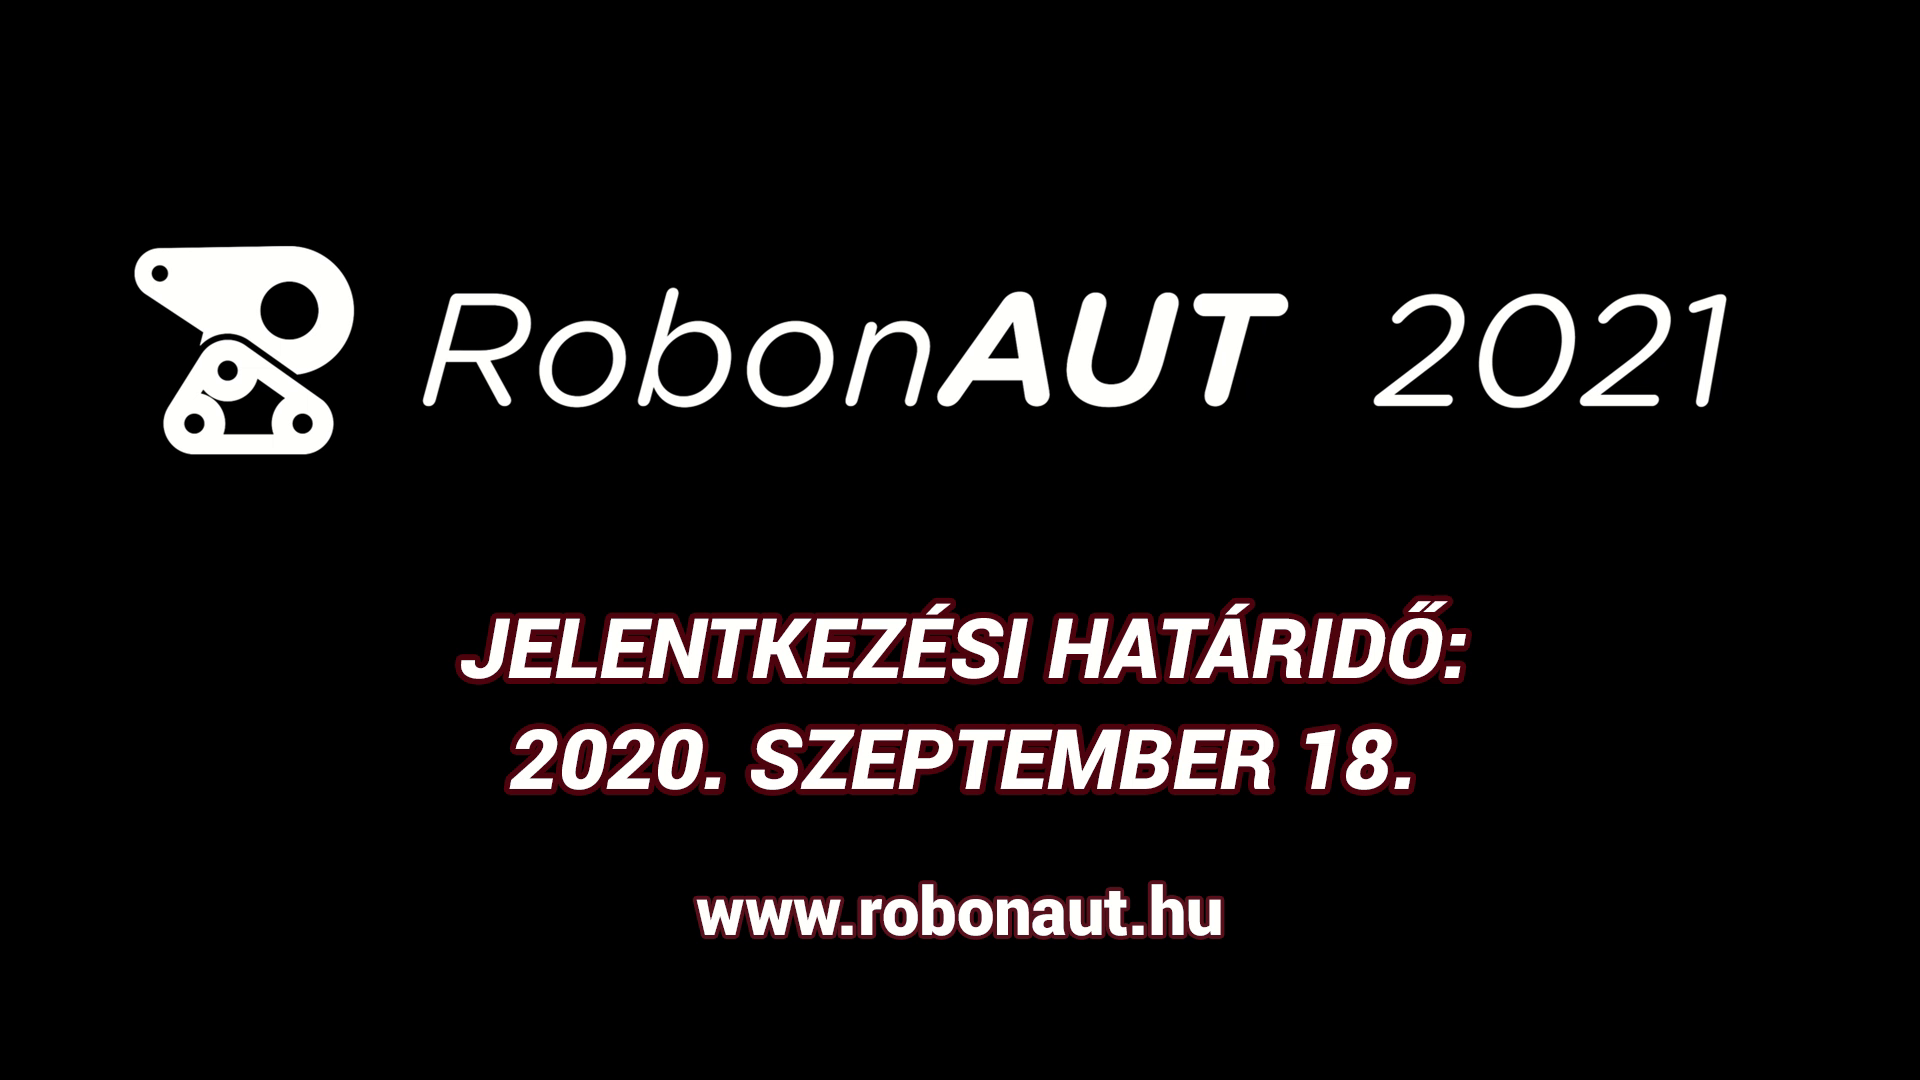 RobonAUT 2021 - Jelentkezz!